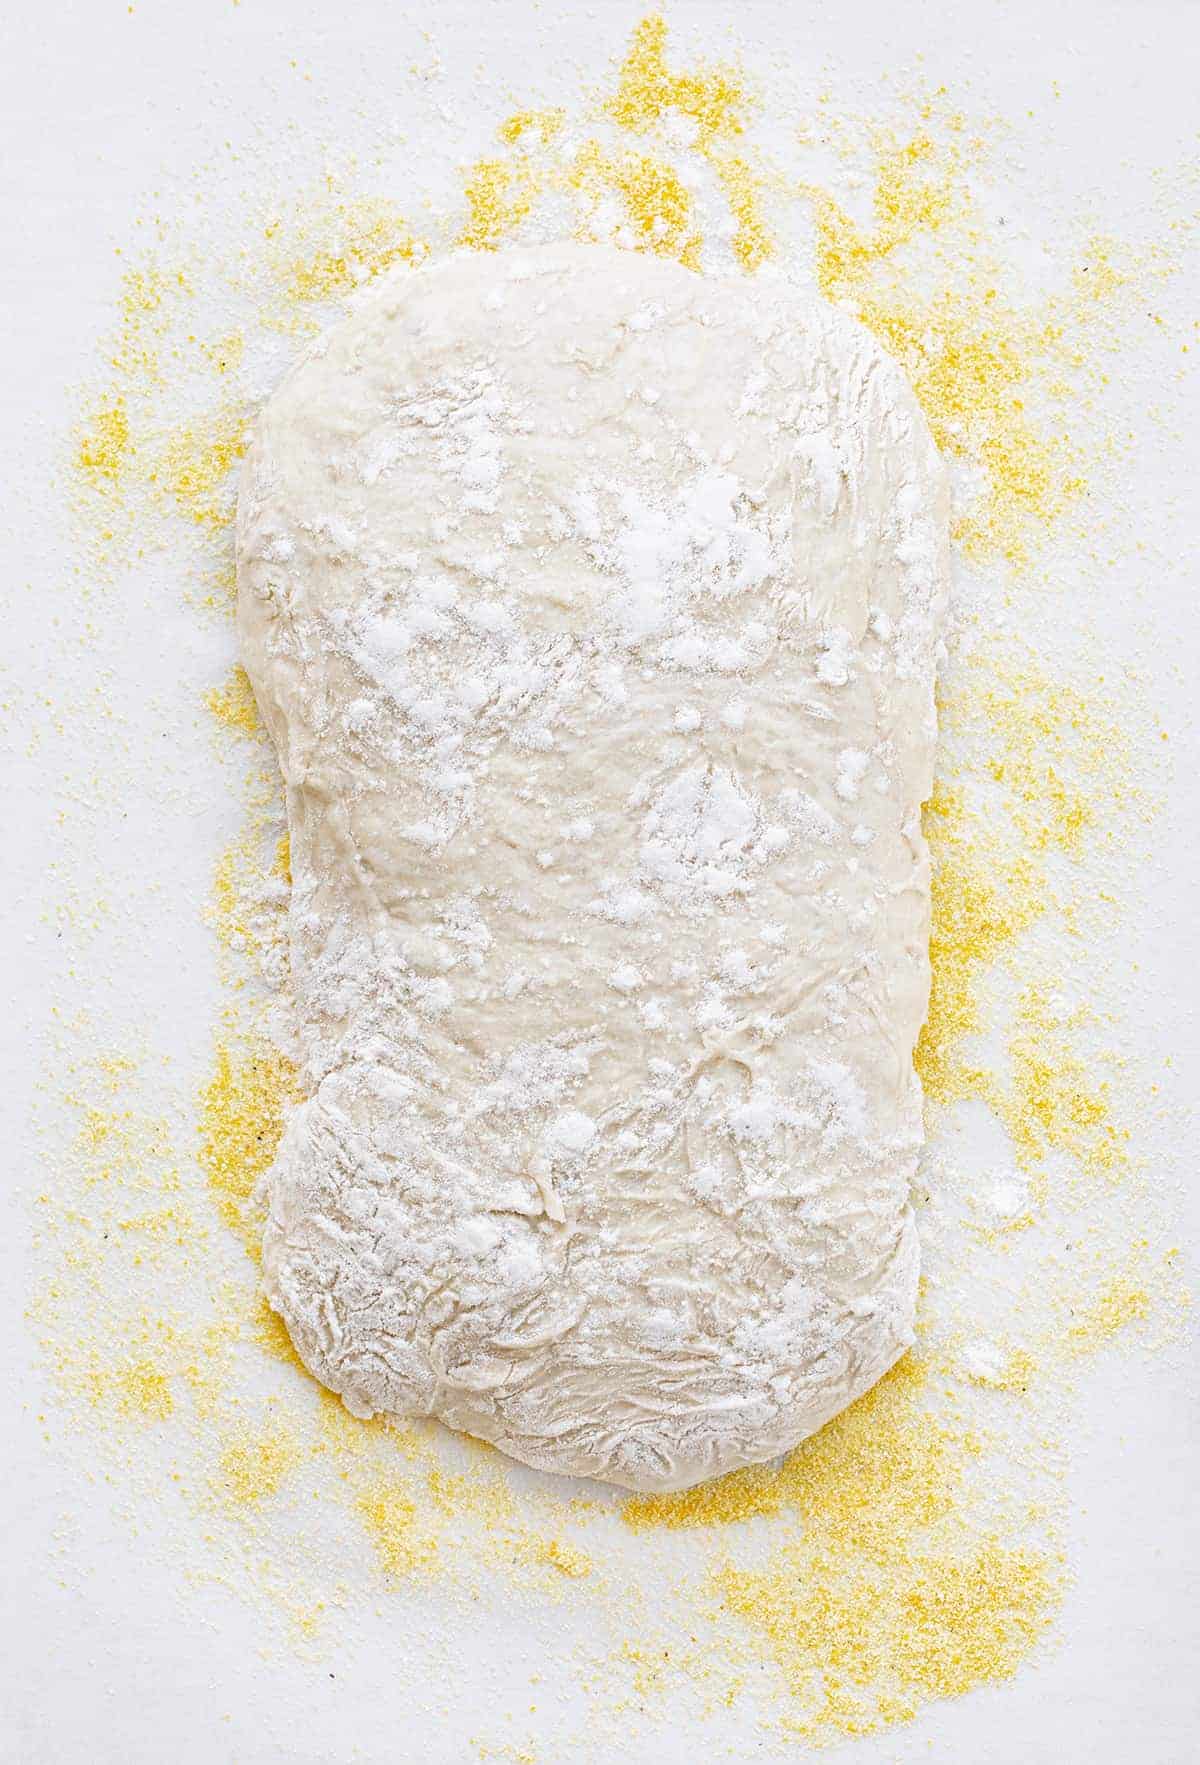 Dough for Ciabatta Recipe